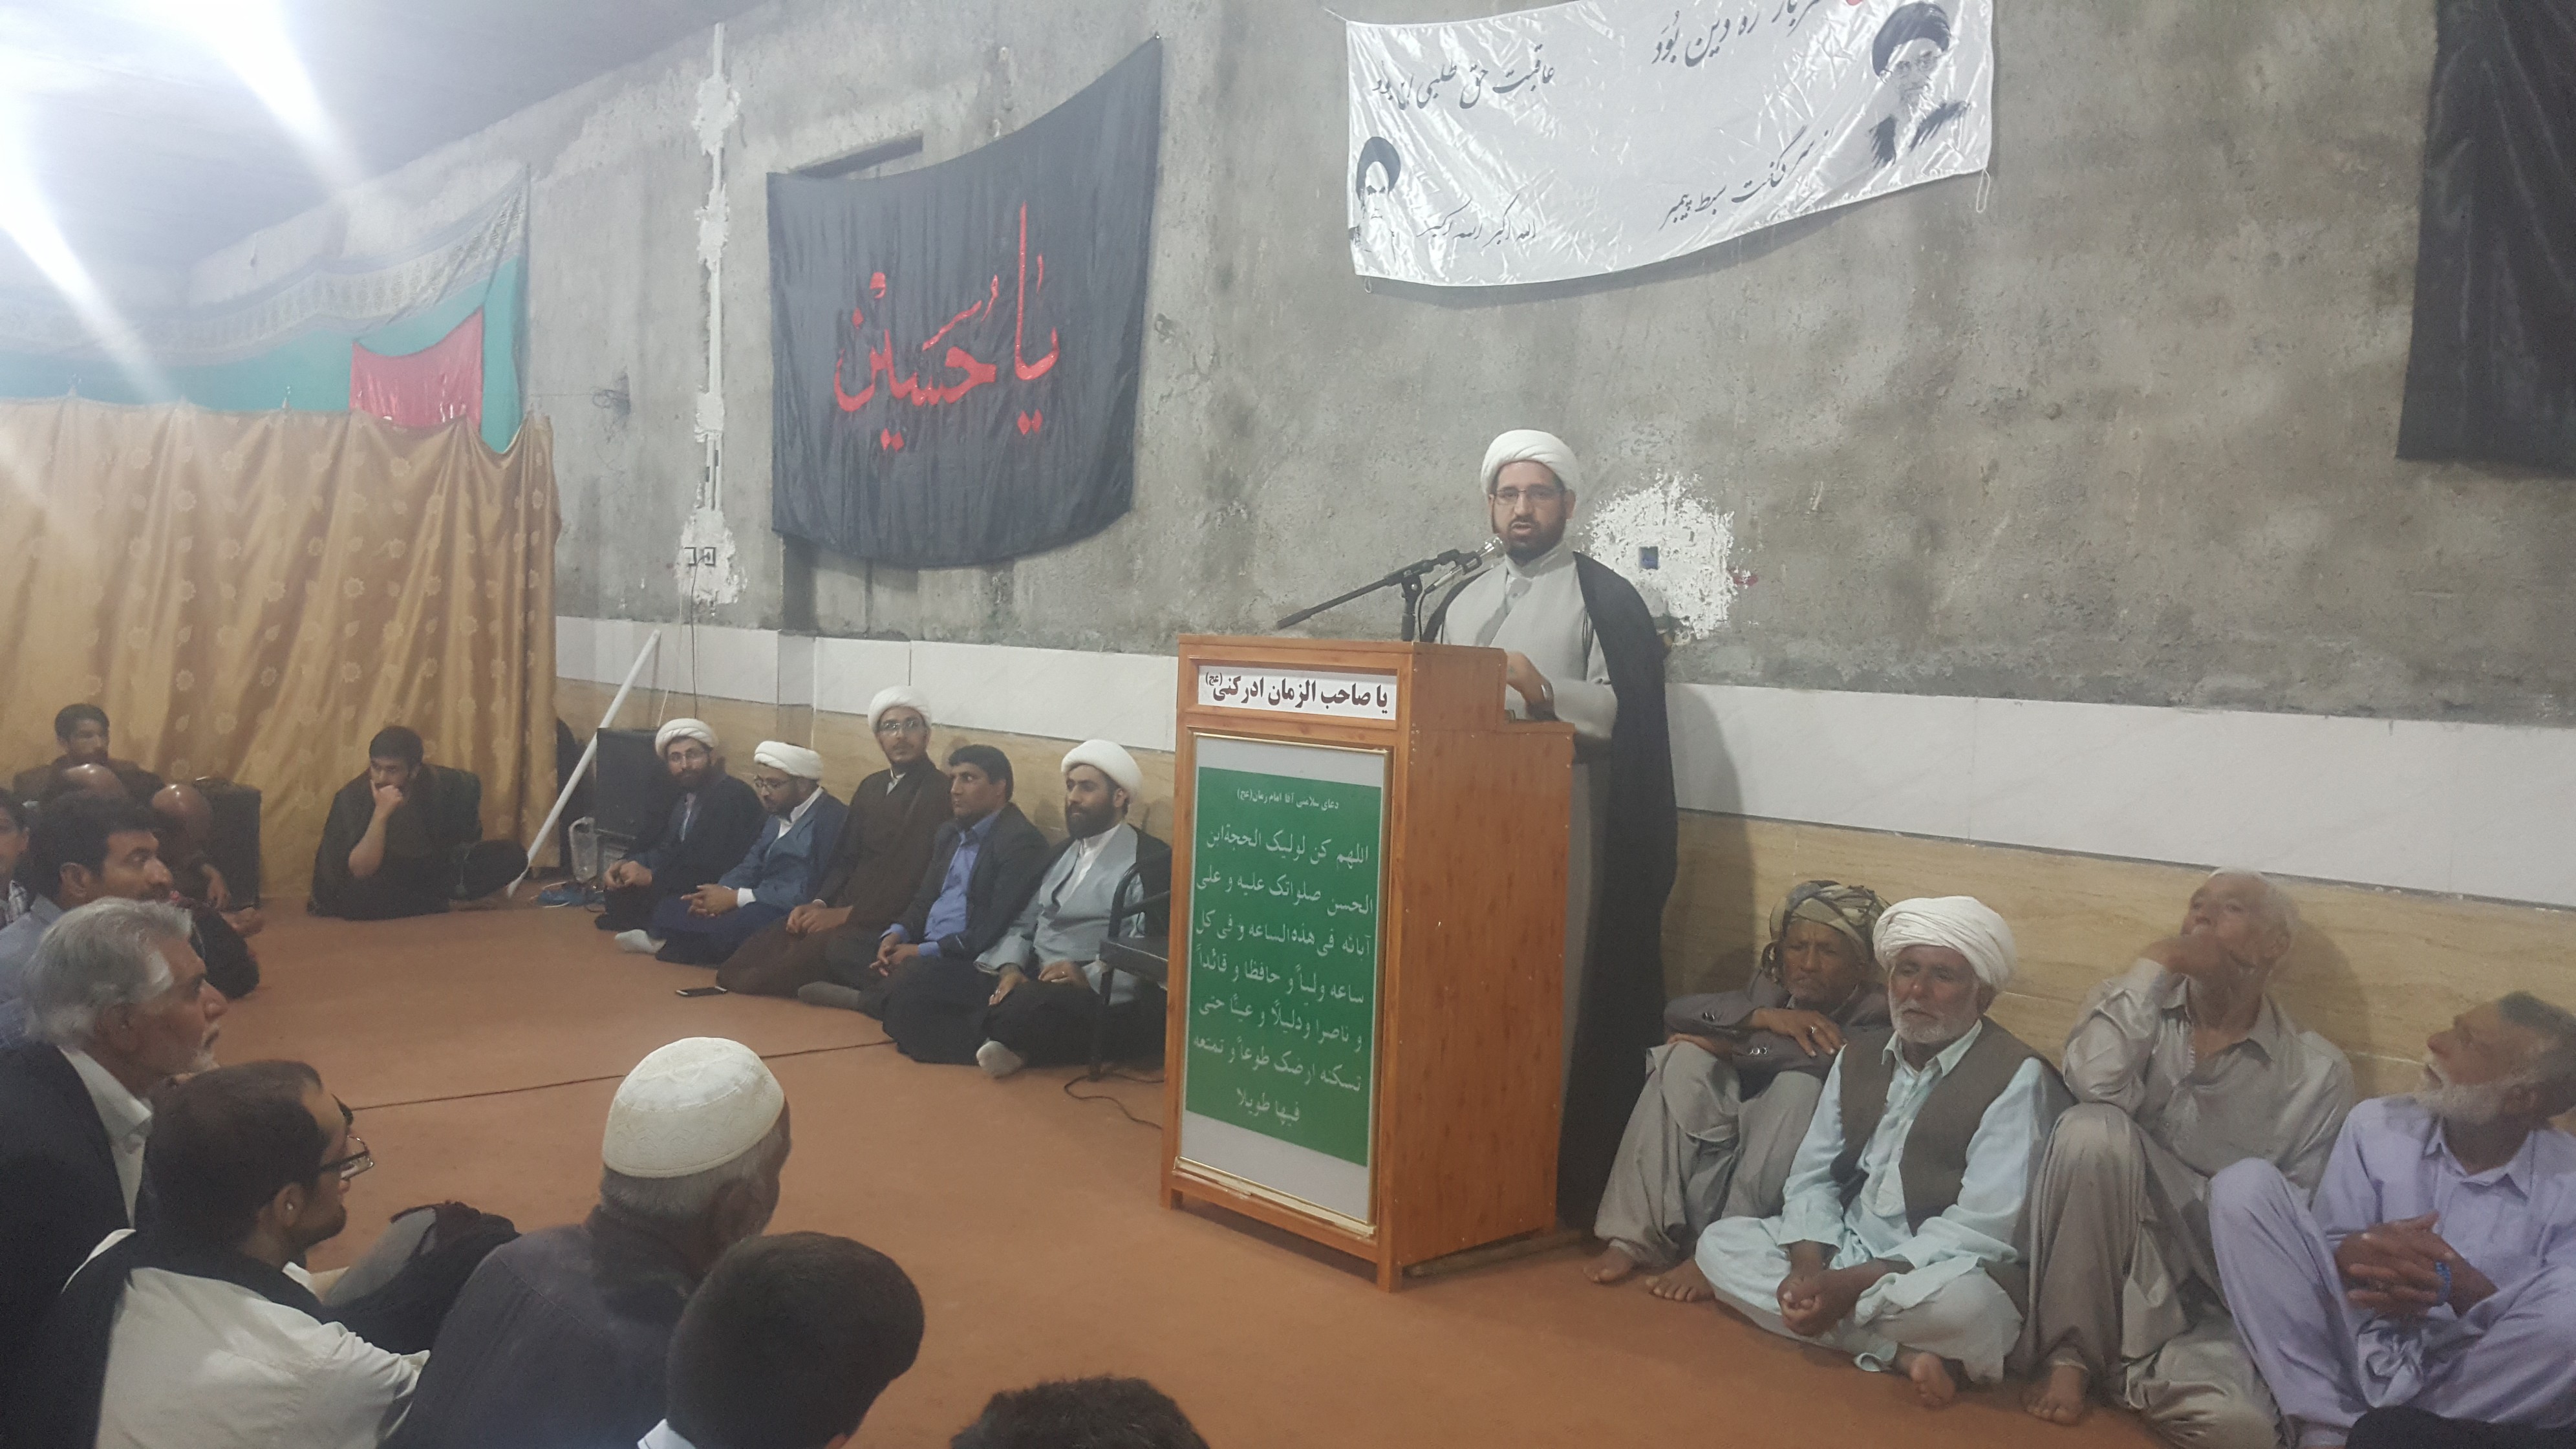 مسجد حضرت امام حسین(ع) روستای کول شهرستان زابل افتتاح و به بهره برداری رسید